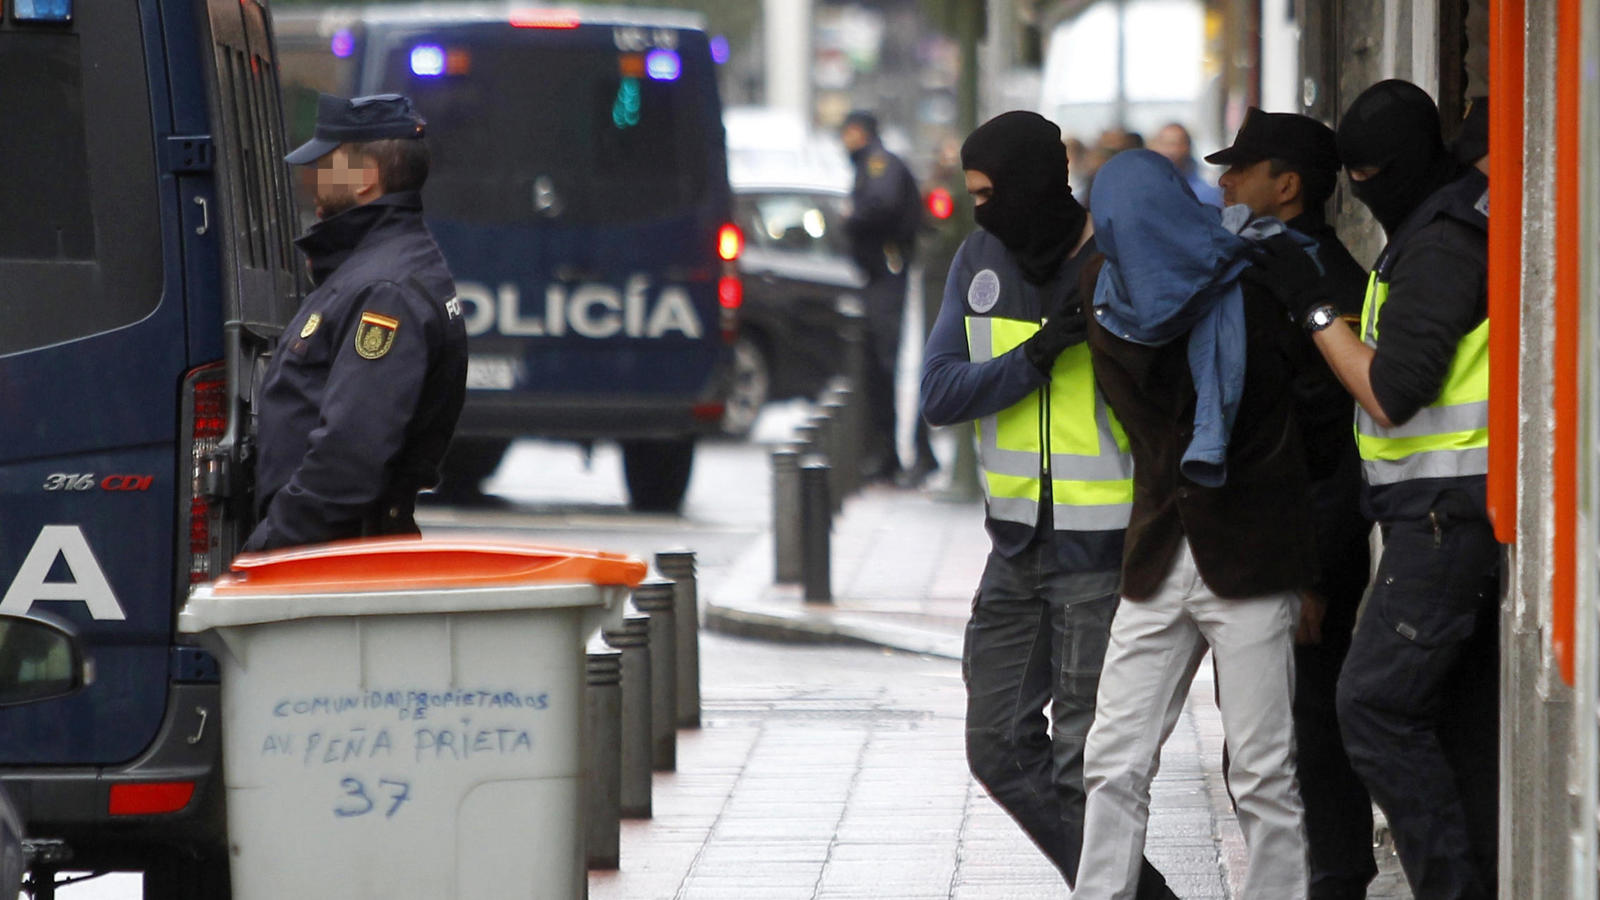 صورة مدريد : اعتقال مغربي على علاقة بتنظيم “داعش”